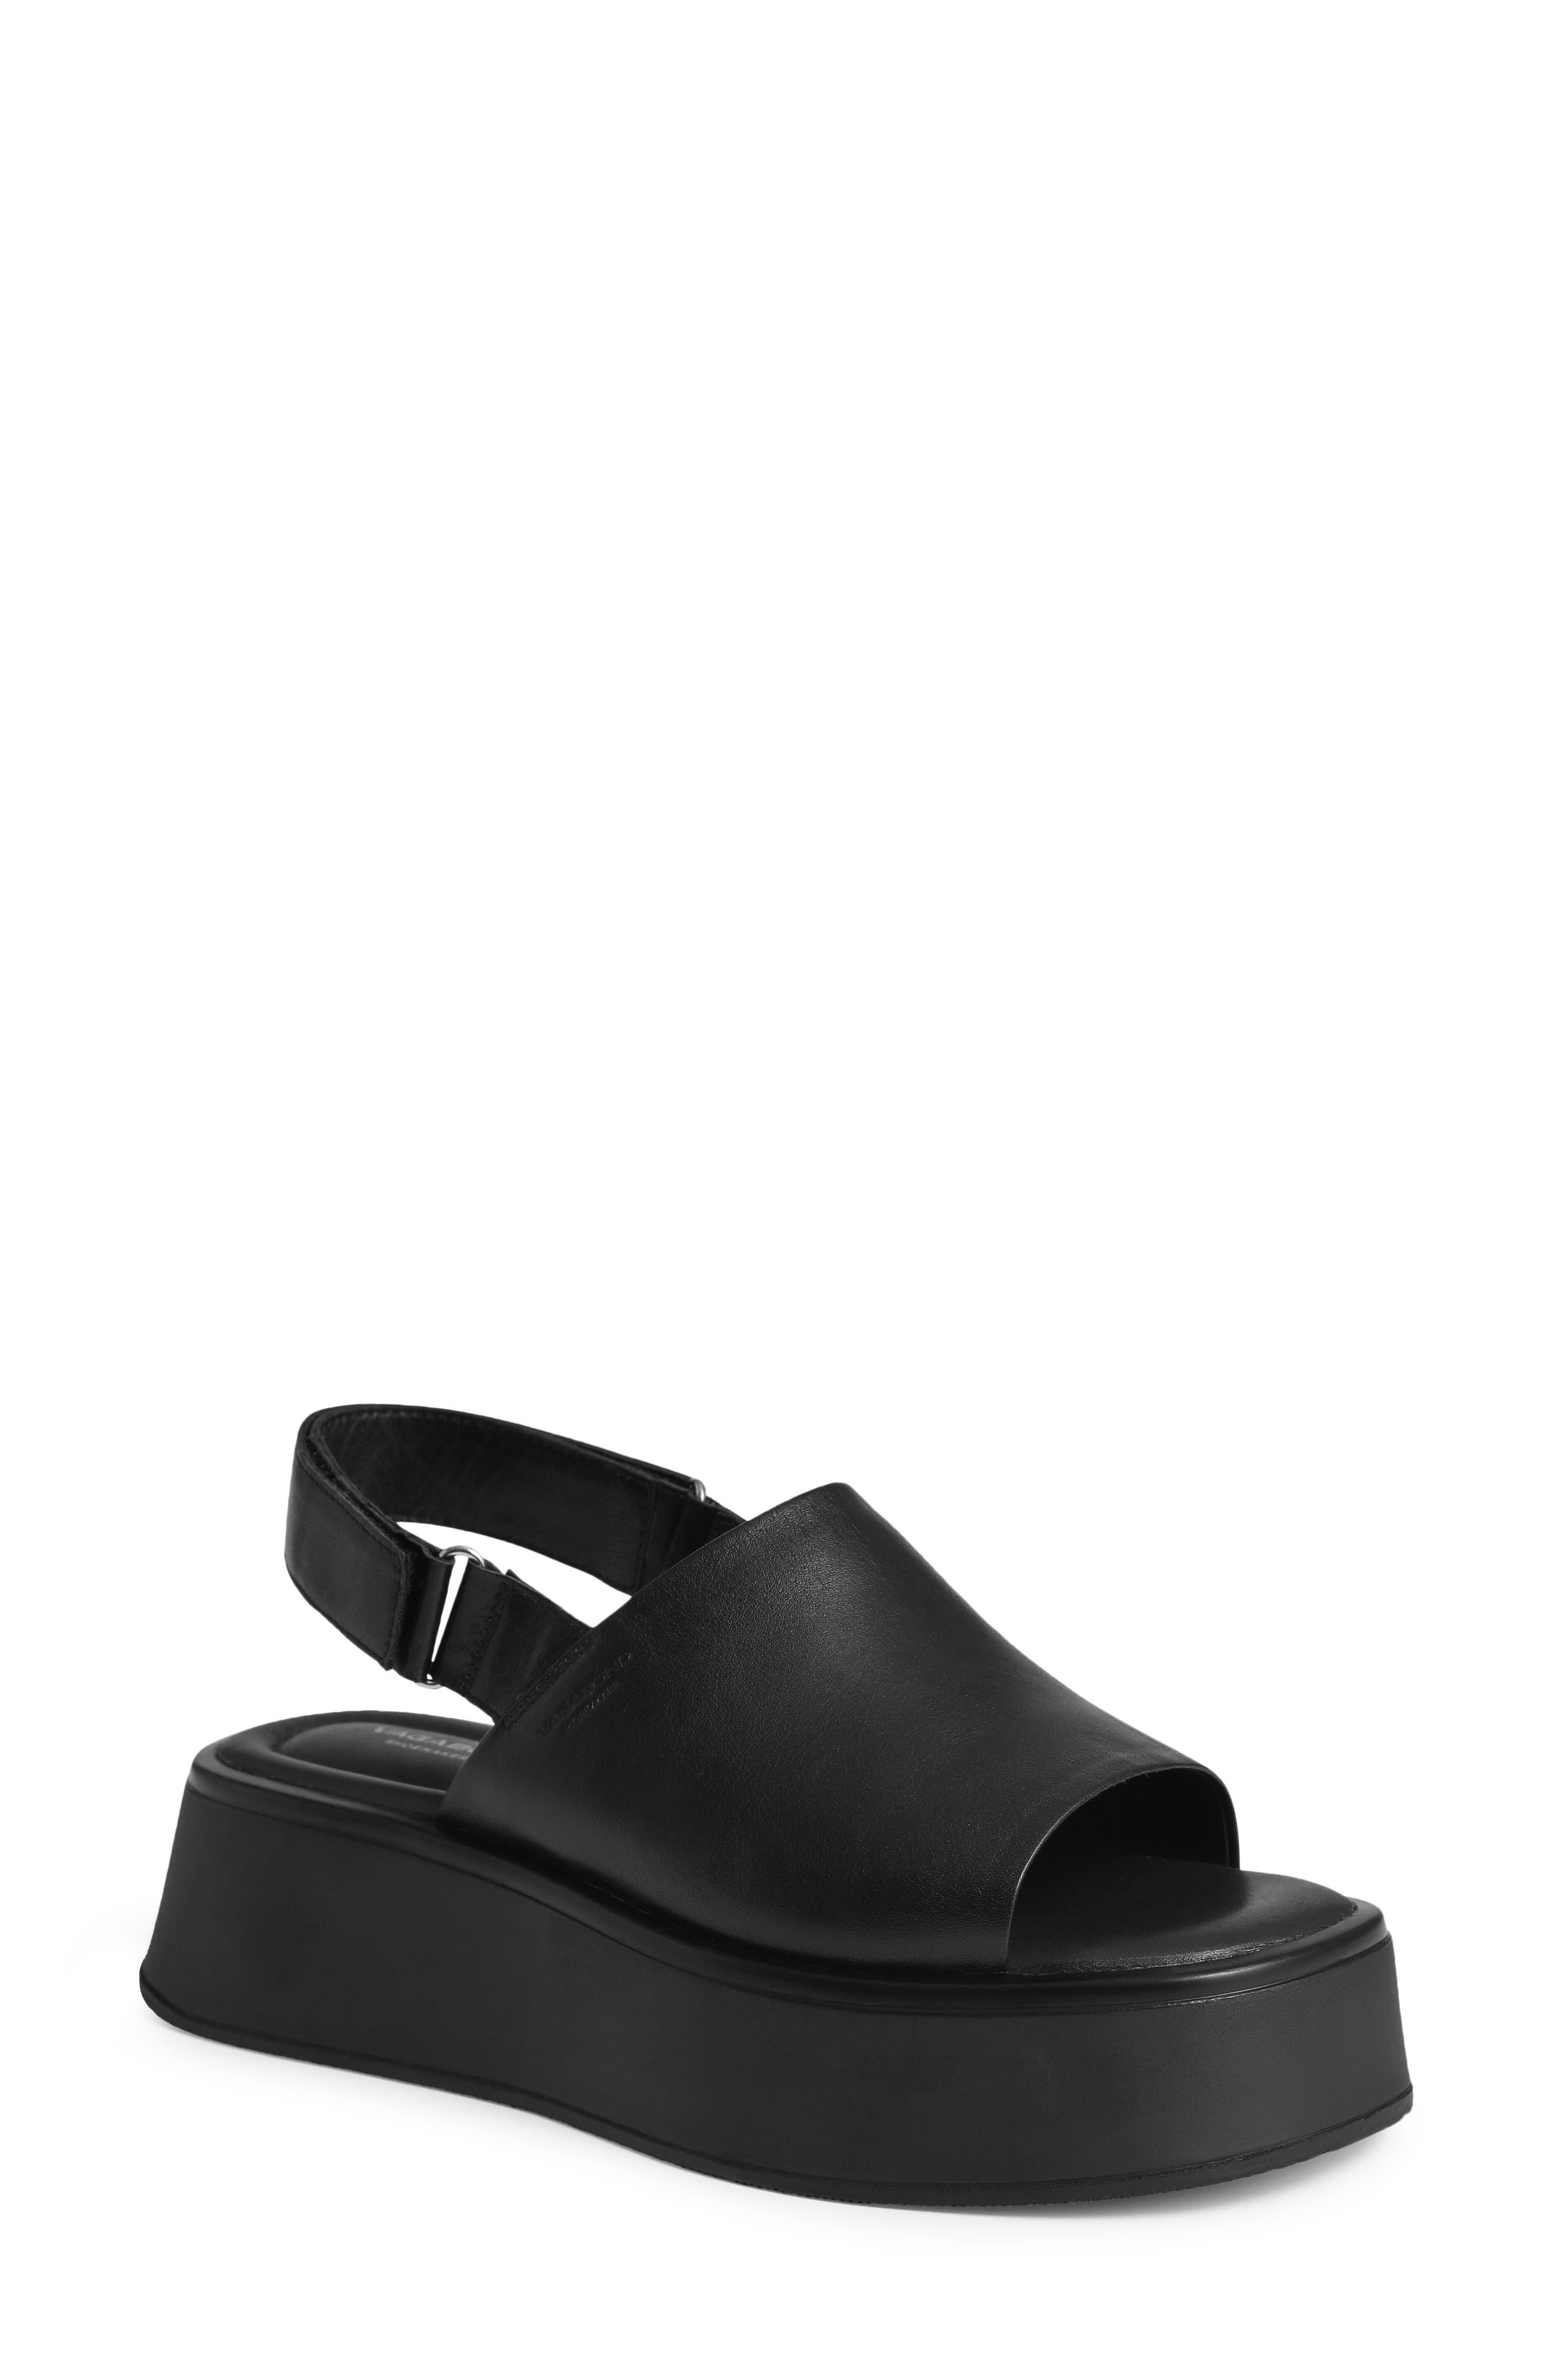 Vagabond Shoemakers Courtney Slingback Platform Sandal in Black | Lyst